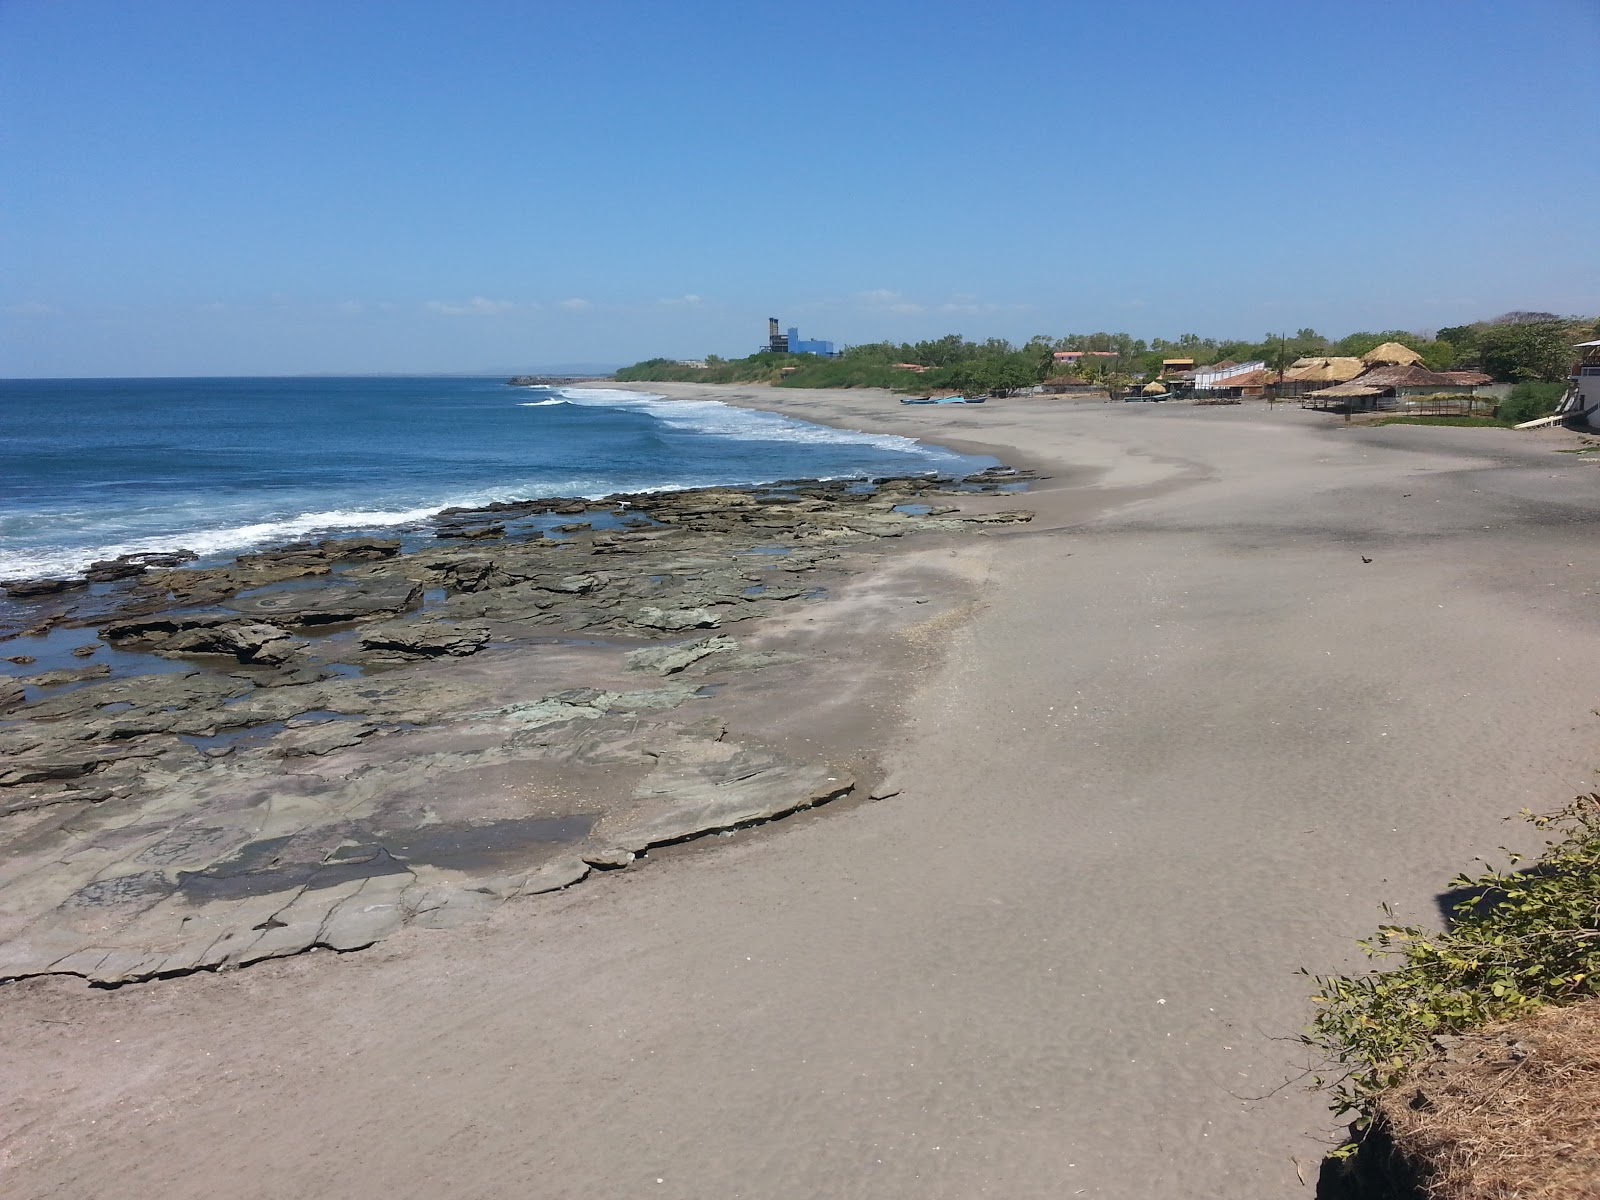 Zdjęcie Miramar beach z powierzchnią piasek z kamieniami